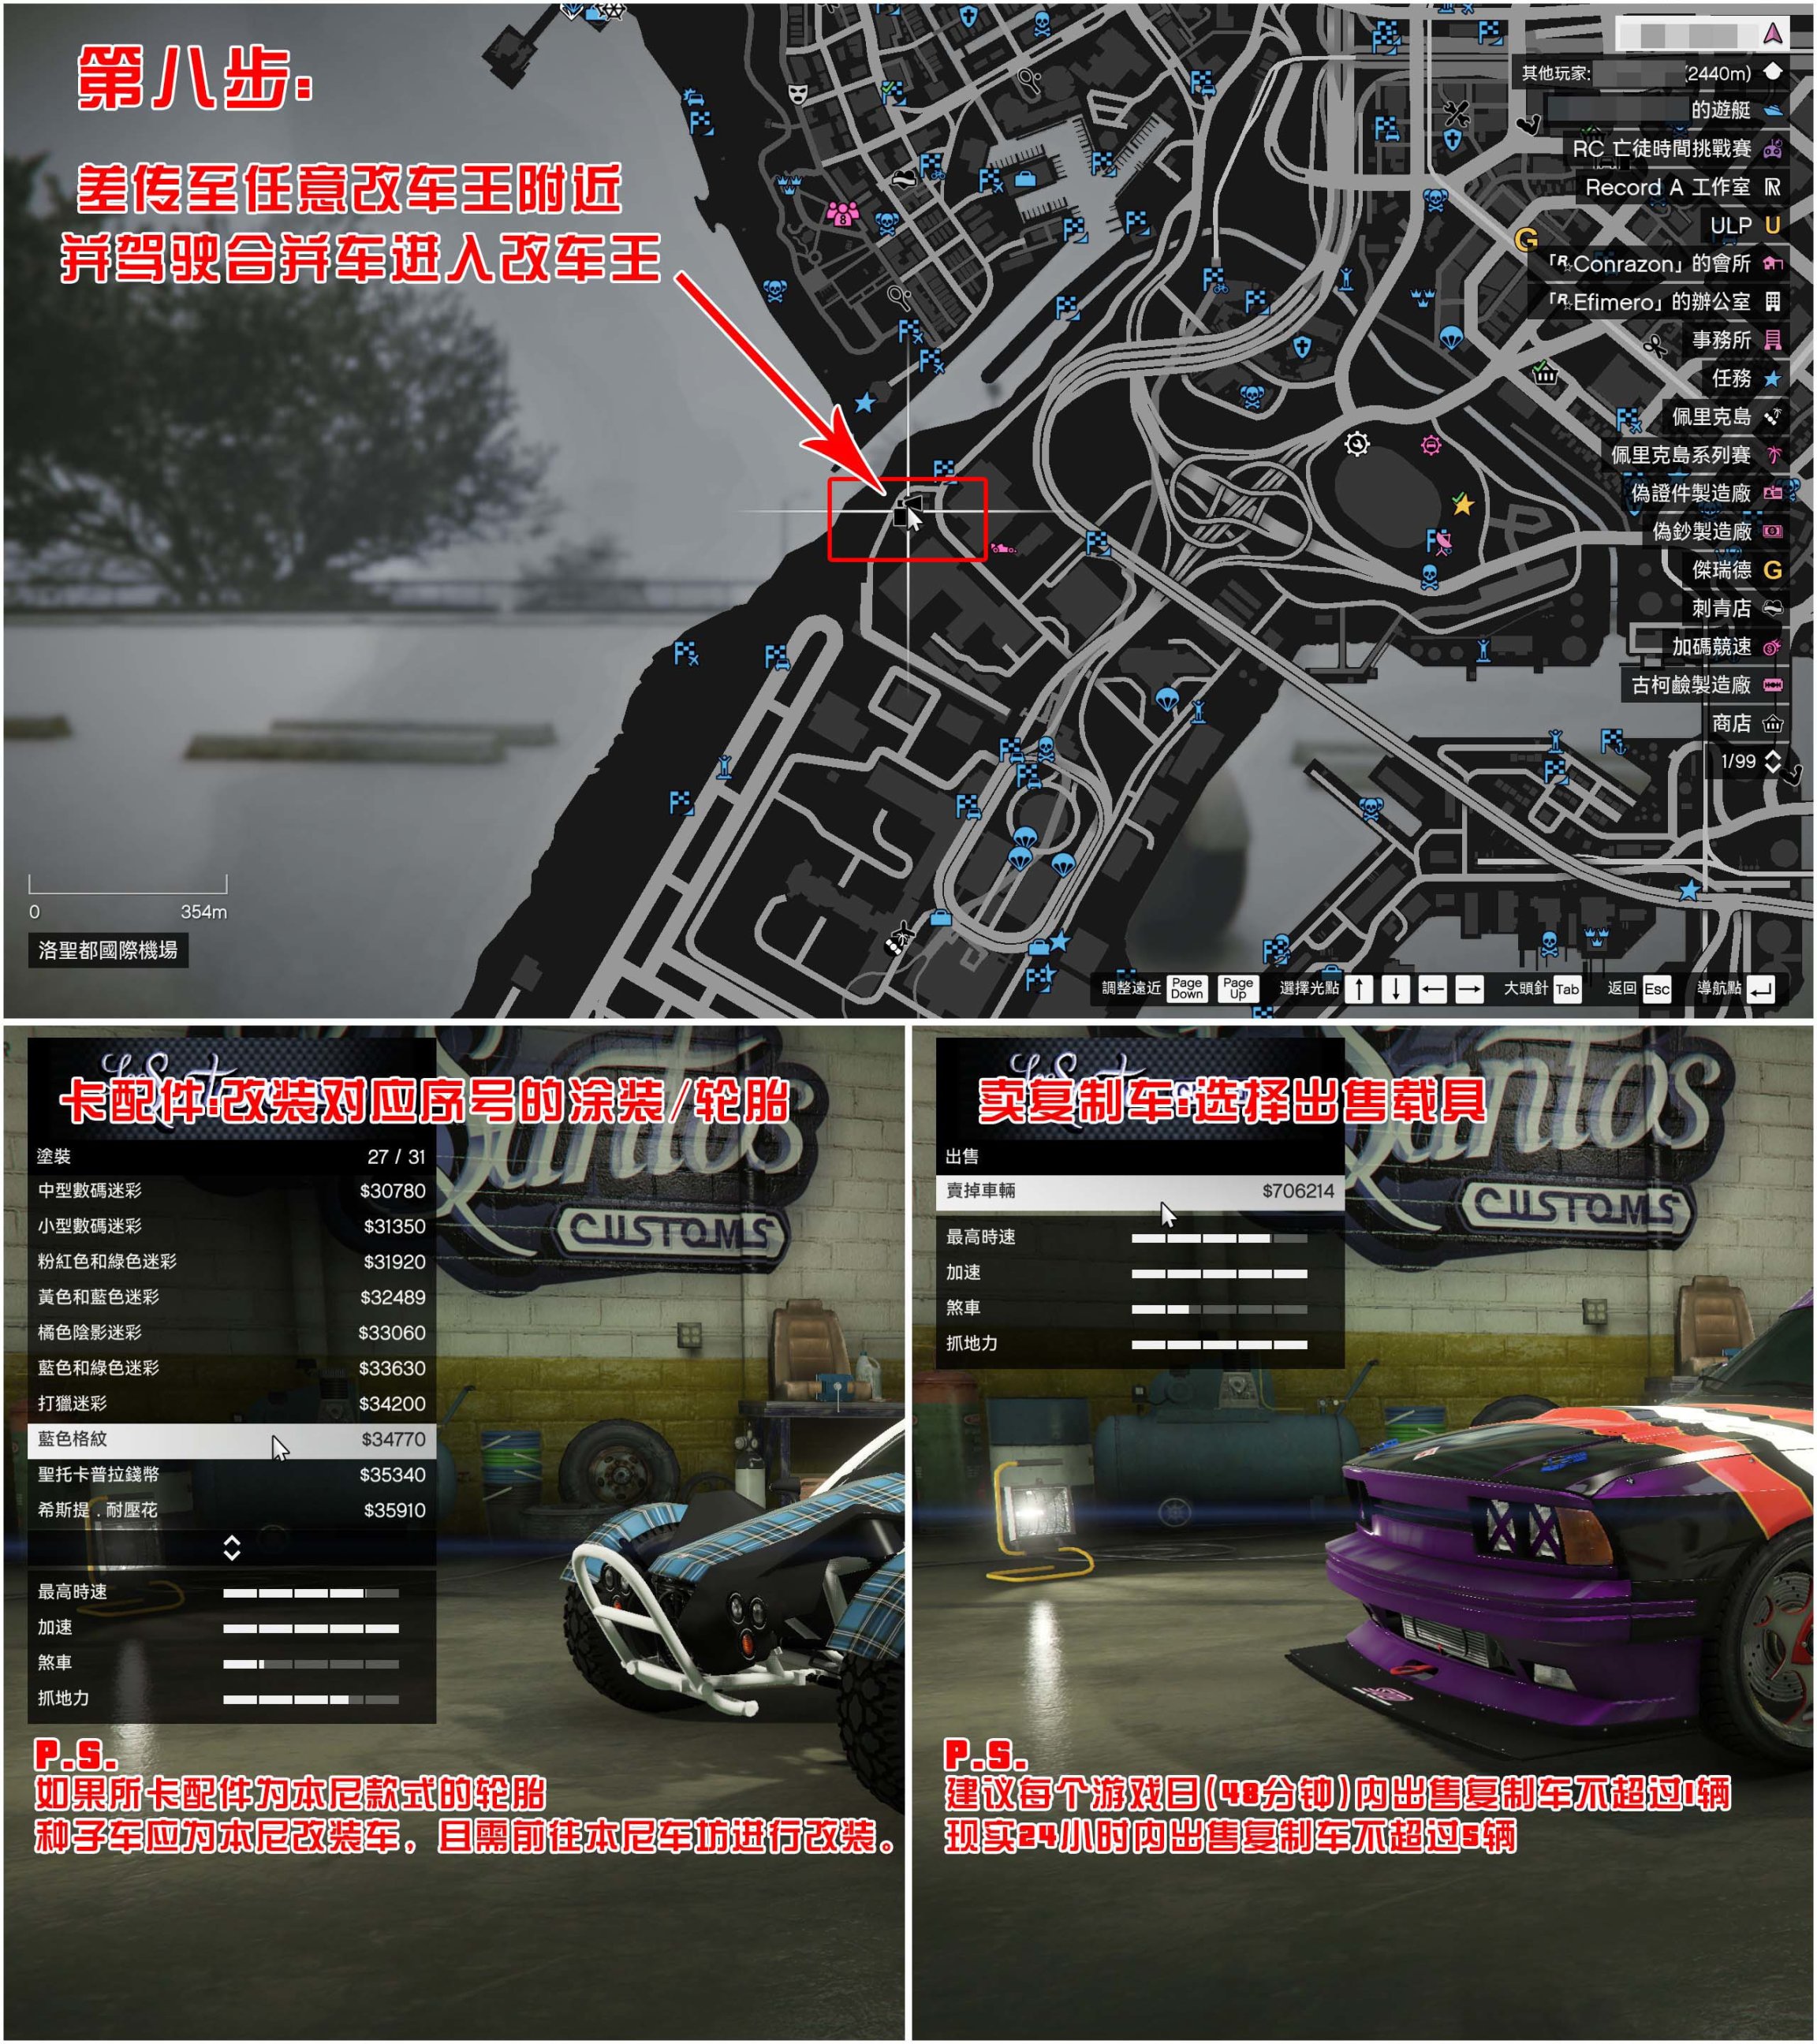 【侠盗猎车手5】GTA 在线模式攻略：获取载具隐藏涂装&复制车&变造外贸载具-第8张